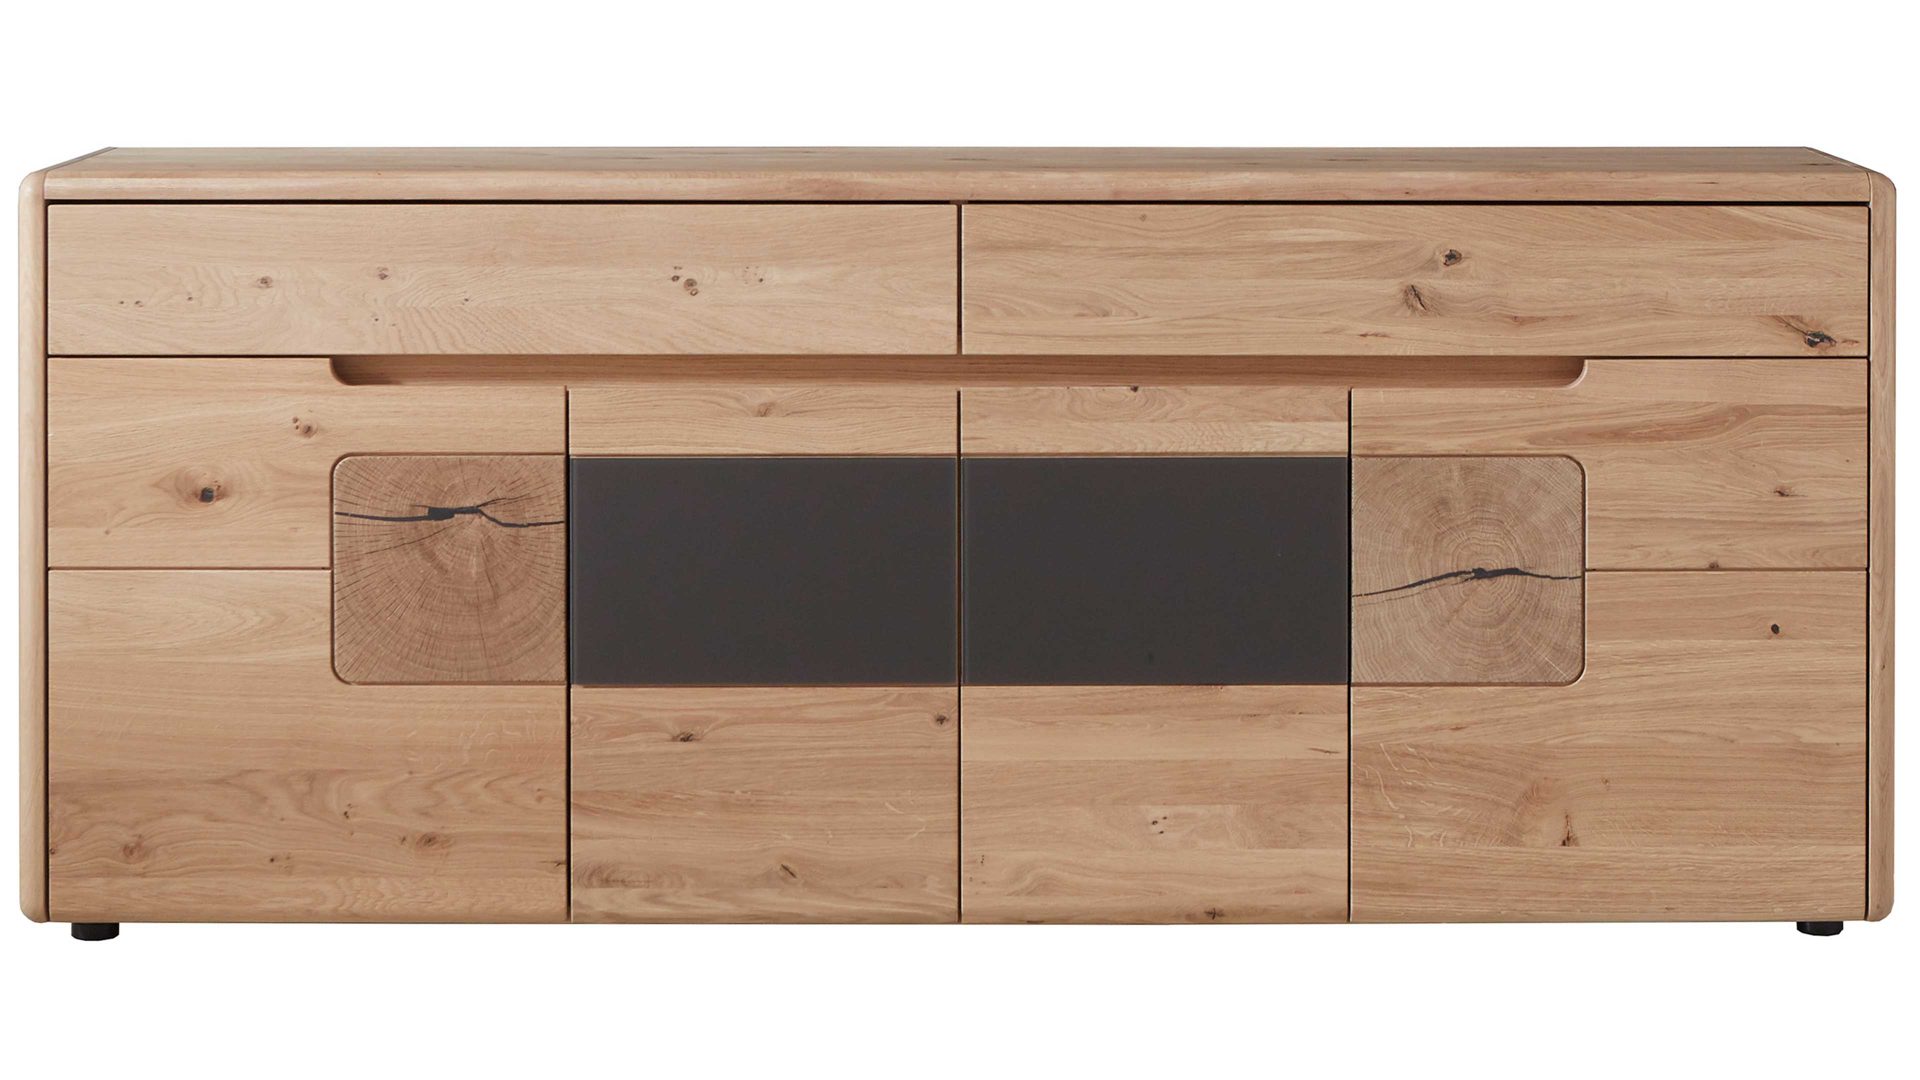 Sideboard Wöstmann markenmöbel aus Holz in Holzfarben WÖSTMANN Sideboard Solento Wildeiche & Hirnholz – vier Türen, zwei Schubladen